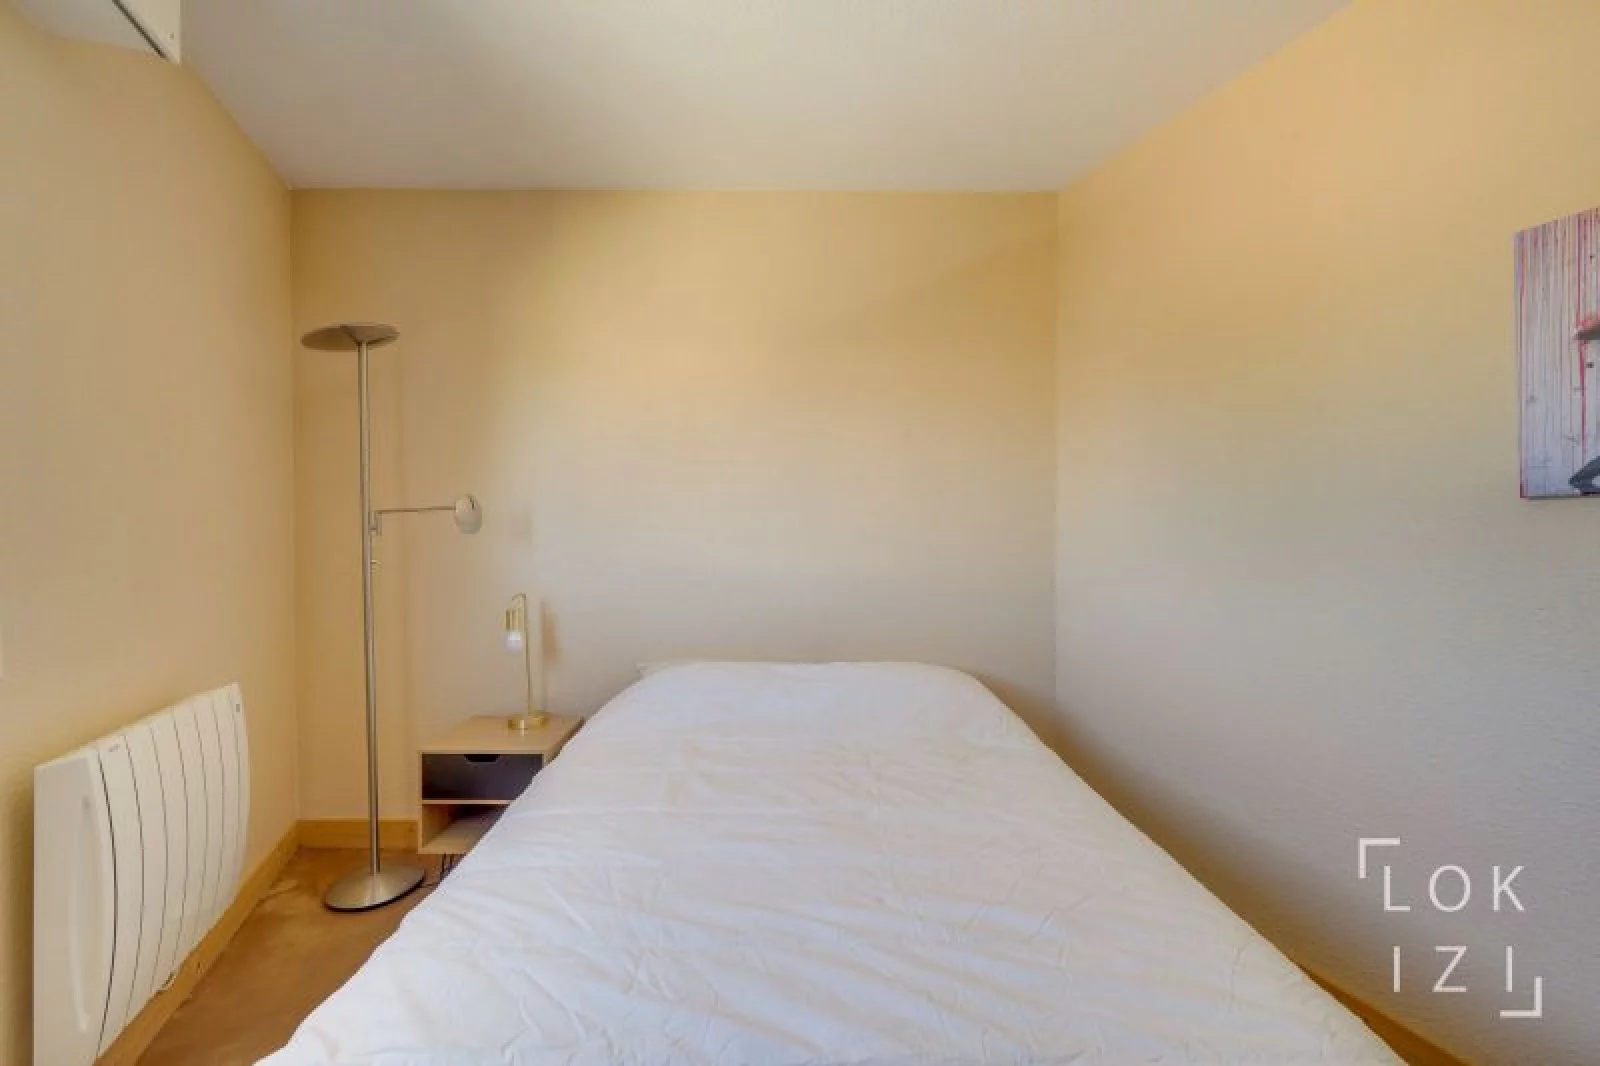 Location appartement meublé 3 pièces 69 m² (Bordeaux - Tivoli)